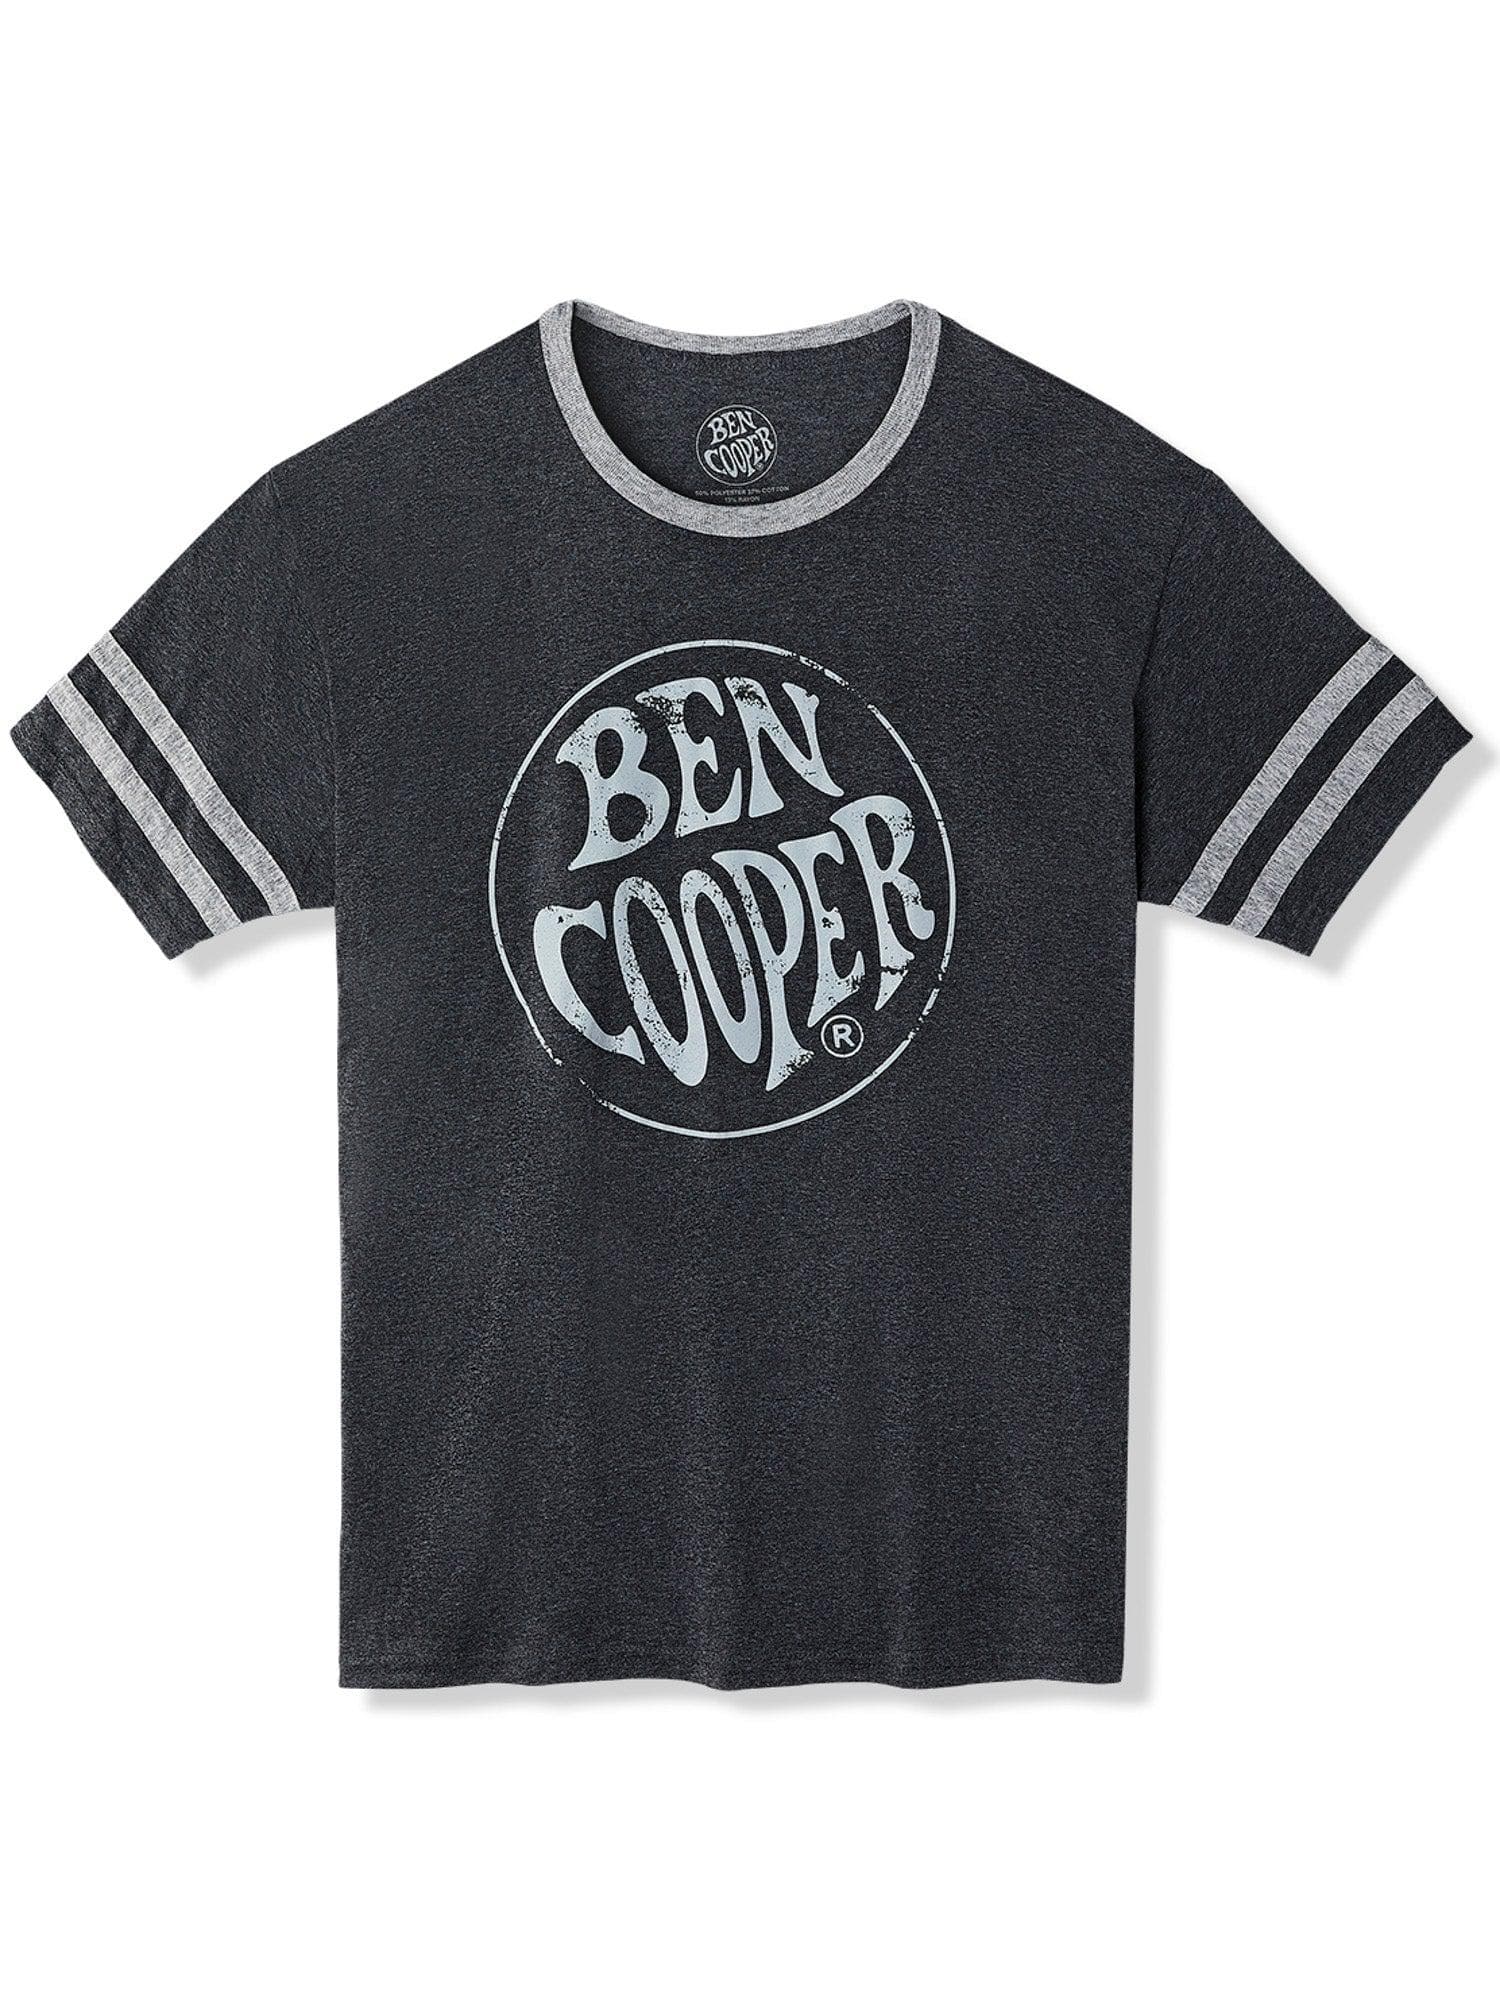 NECA - Ben Cooper Apparel - Ben Cooper Heritage Tee - costumes.com